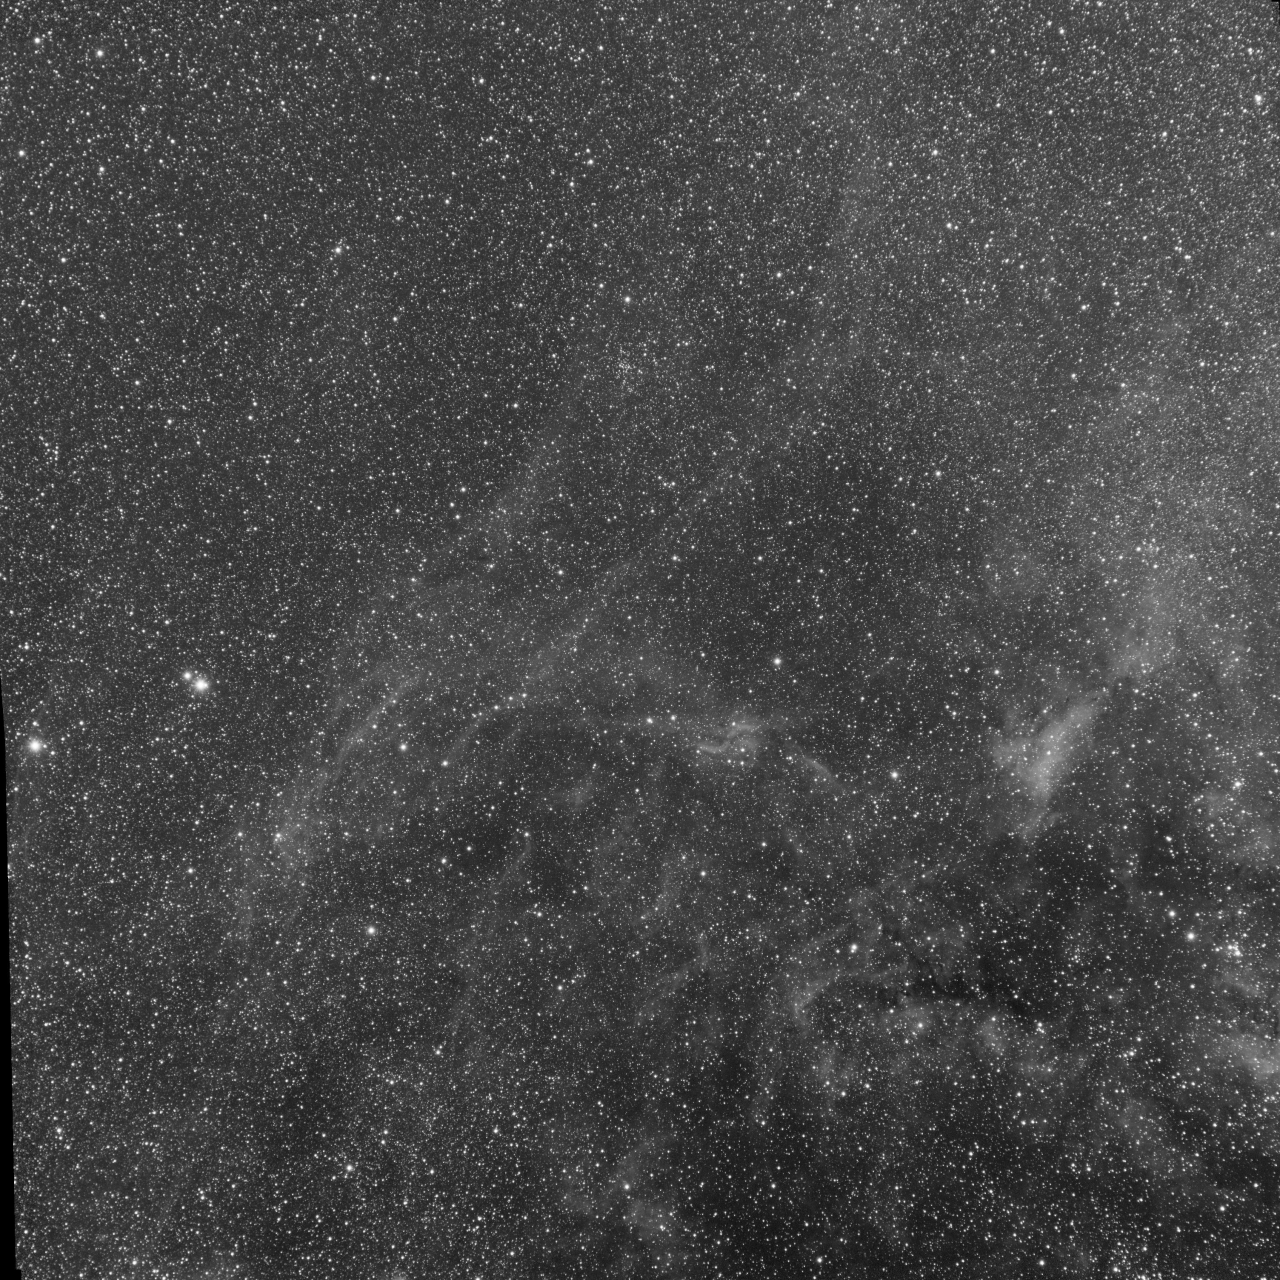 Cygnus near DWB111 - R